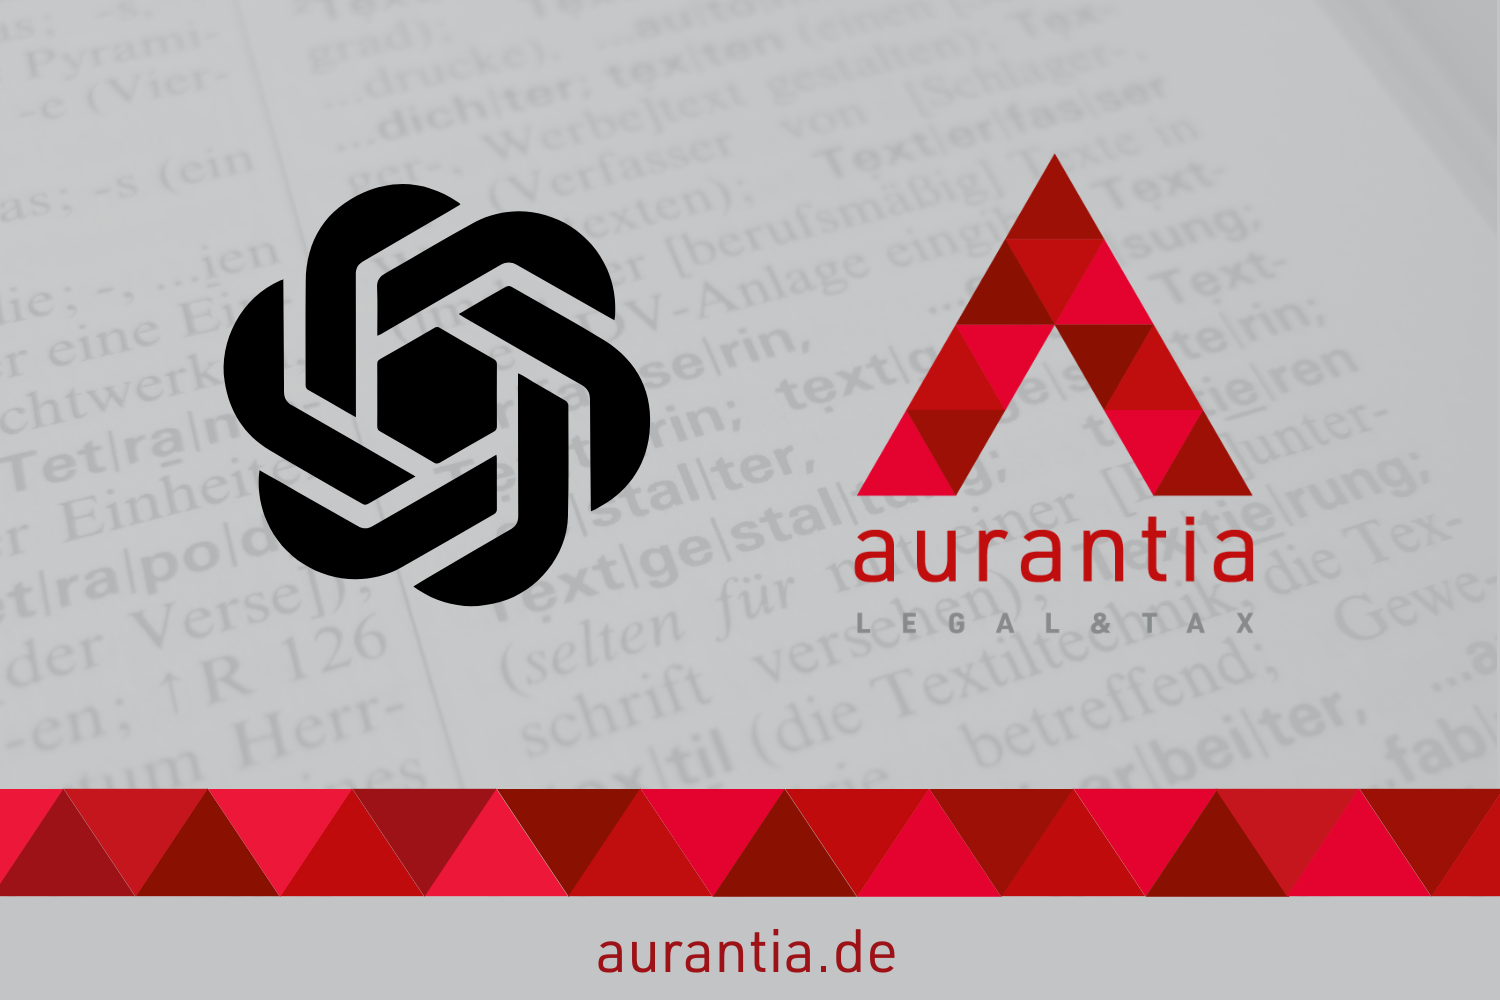 aurantia Steuerberatung versus ChatGPT aurantia.de